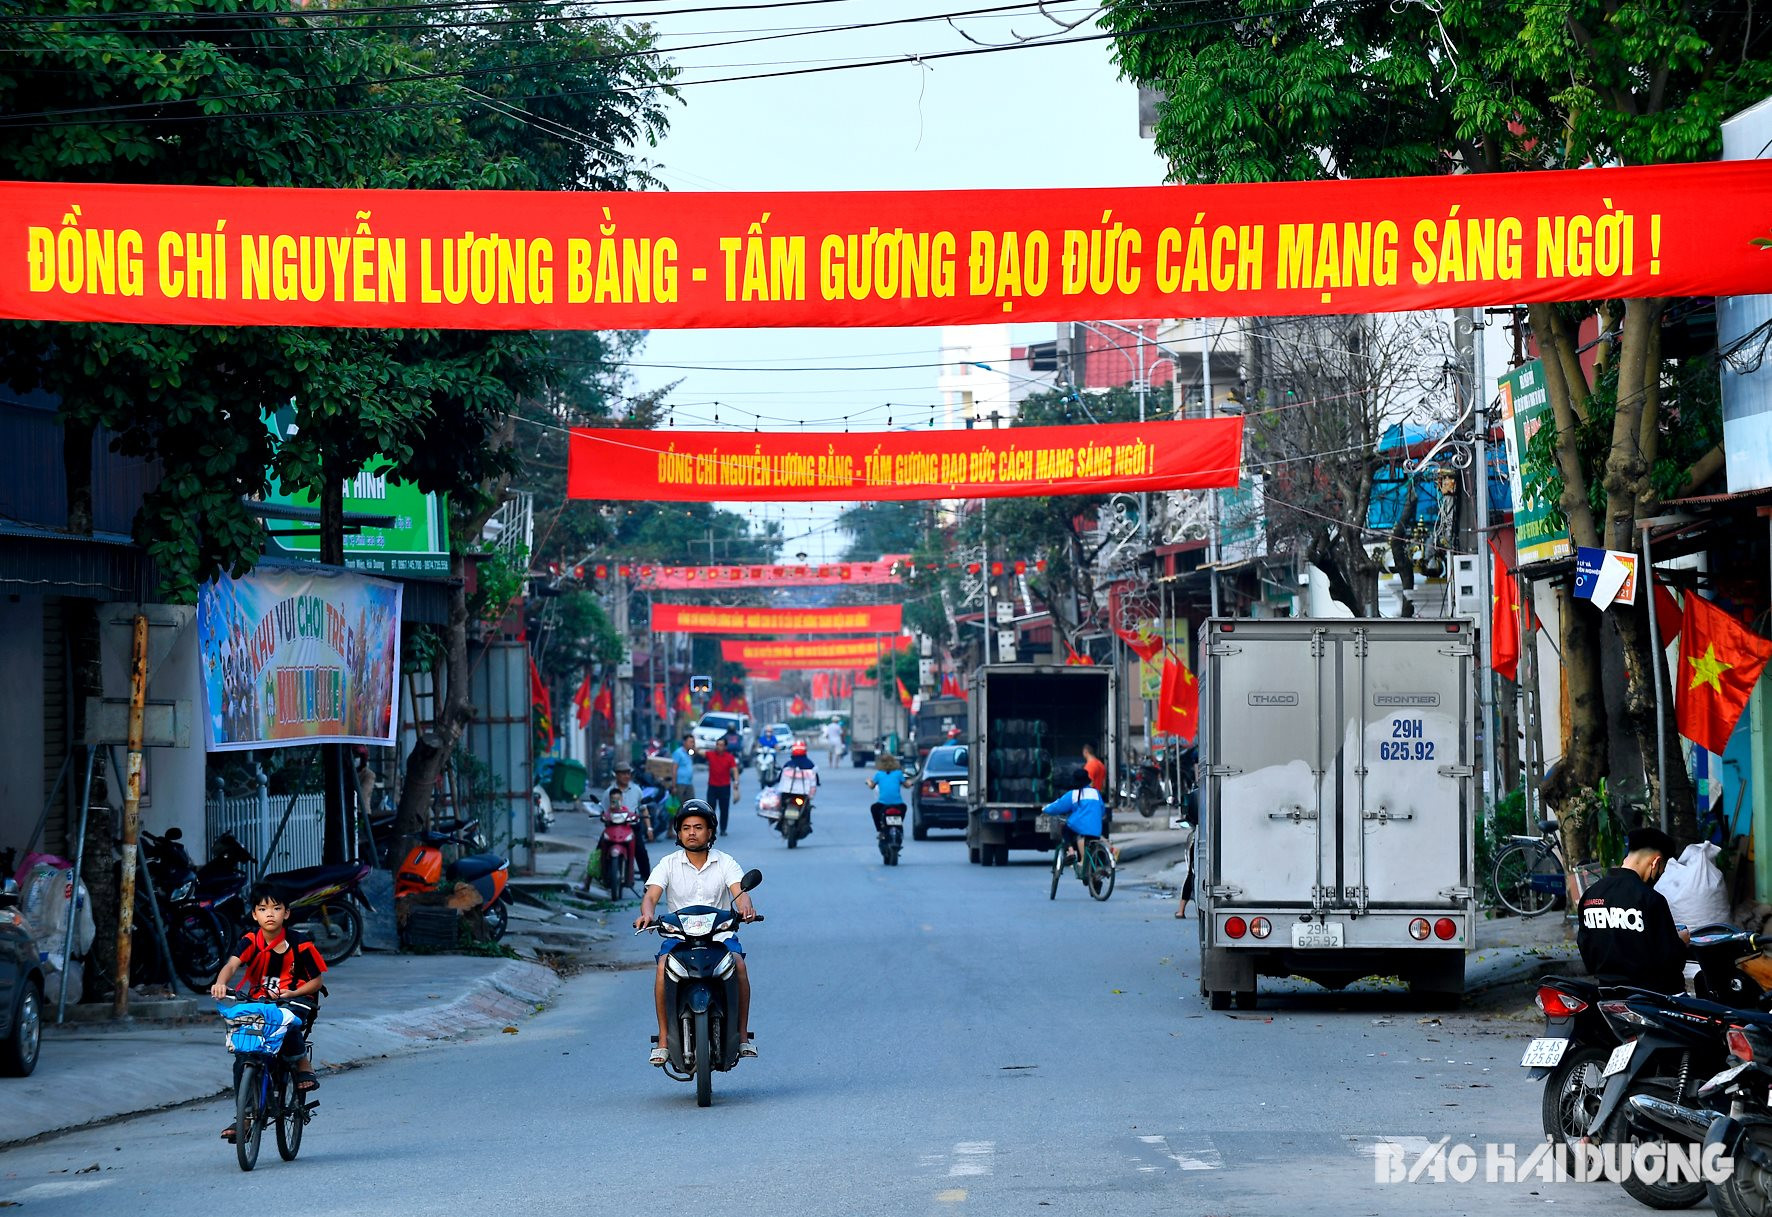 Đường trục chính vào khu nhà tưởng niệm đồng chí Nguyễn Lương Bằng được trang hoàng rực rỡ